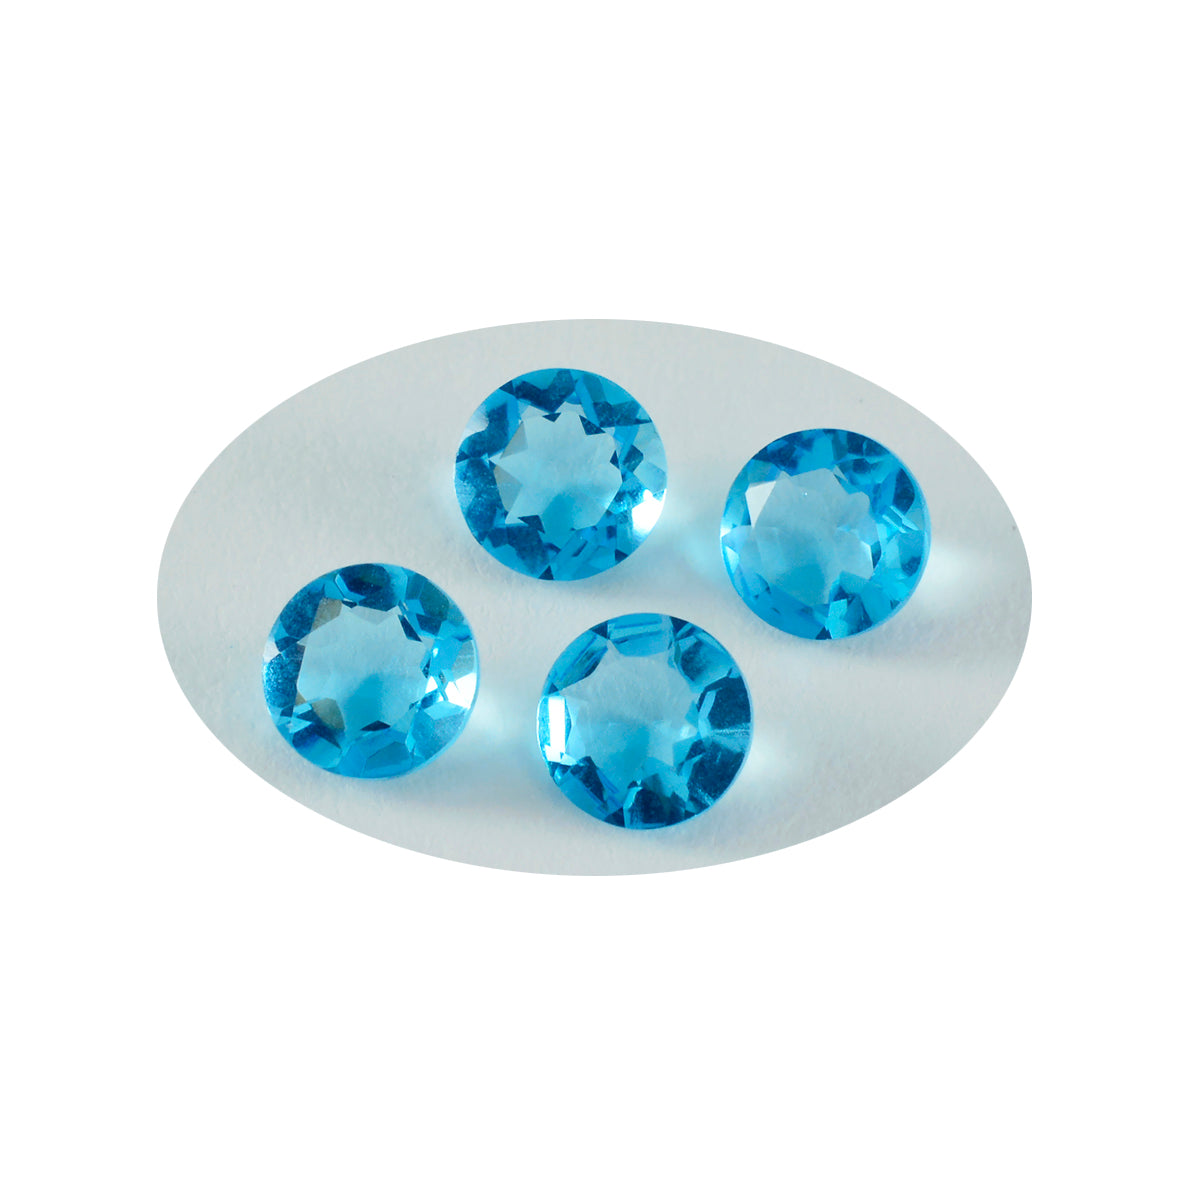 Riyogems 1 Stück blauer Topas, CZ, facettiert, 8 x 8 mm, runde Form, süßer, hochwertiger, loser Edelstein